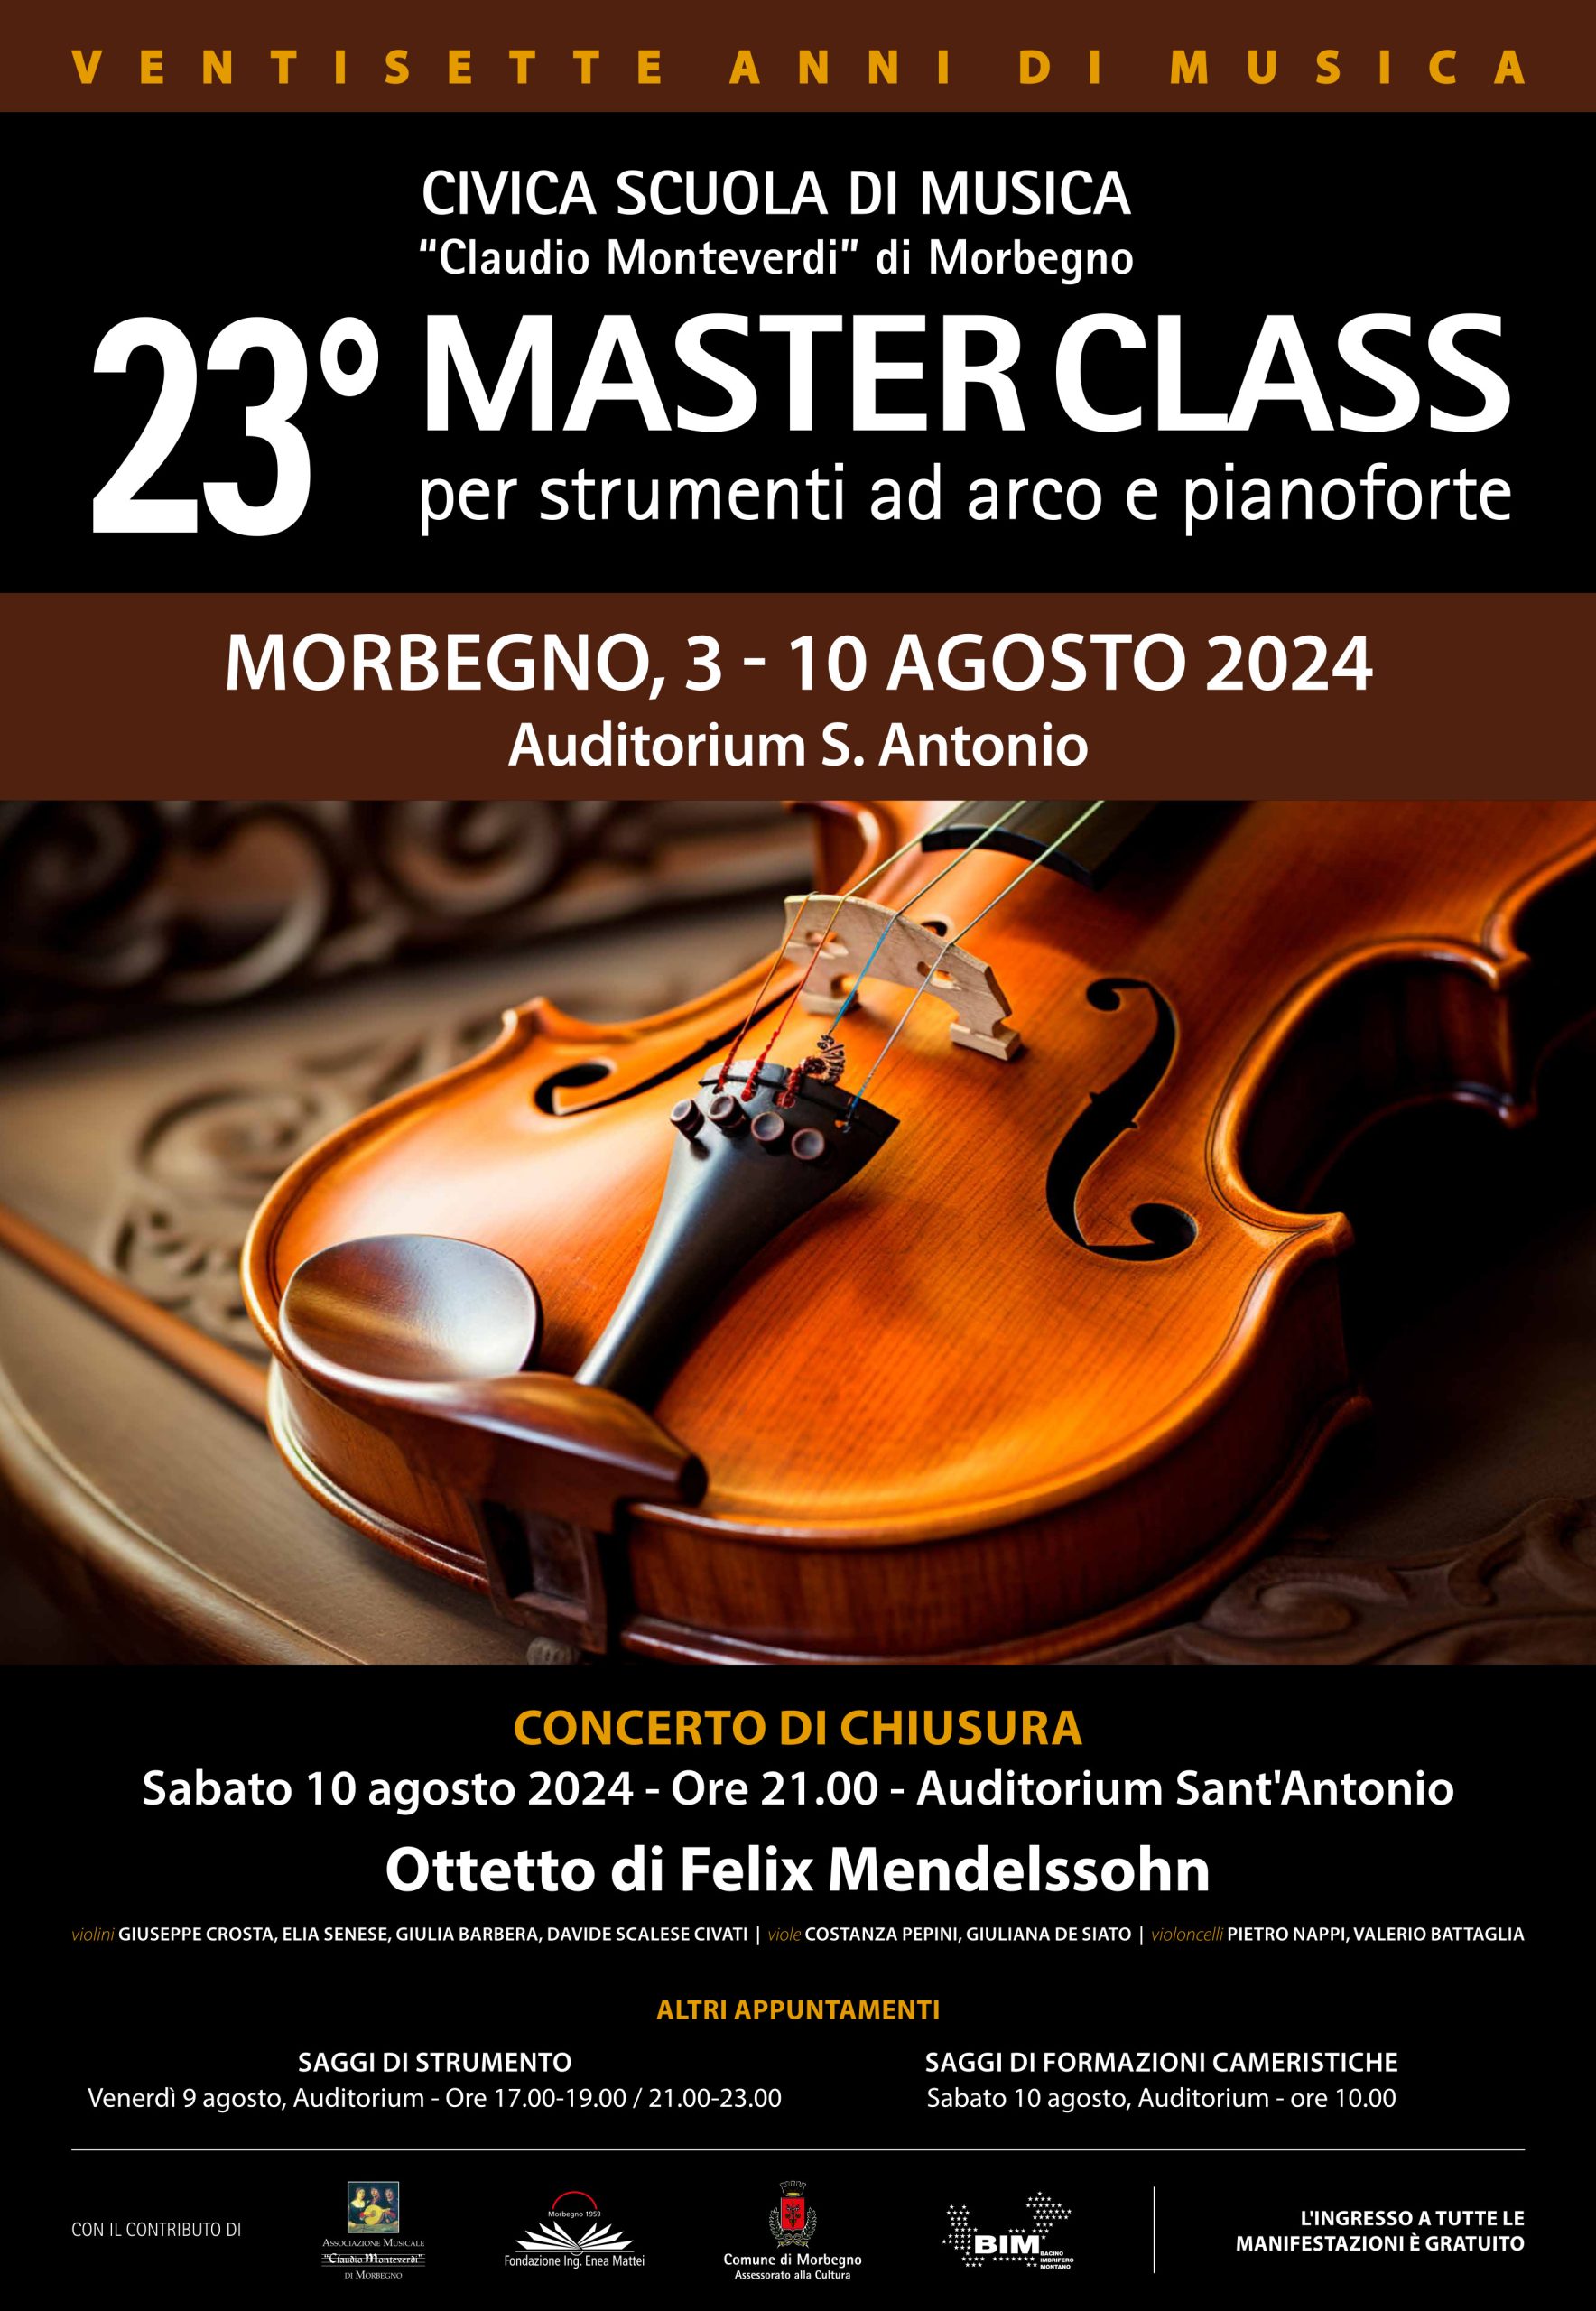 23° Master class con concerti per strumenti ad arco e pianoforte